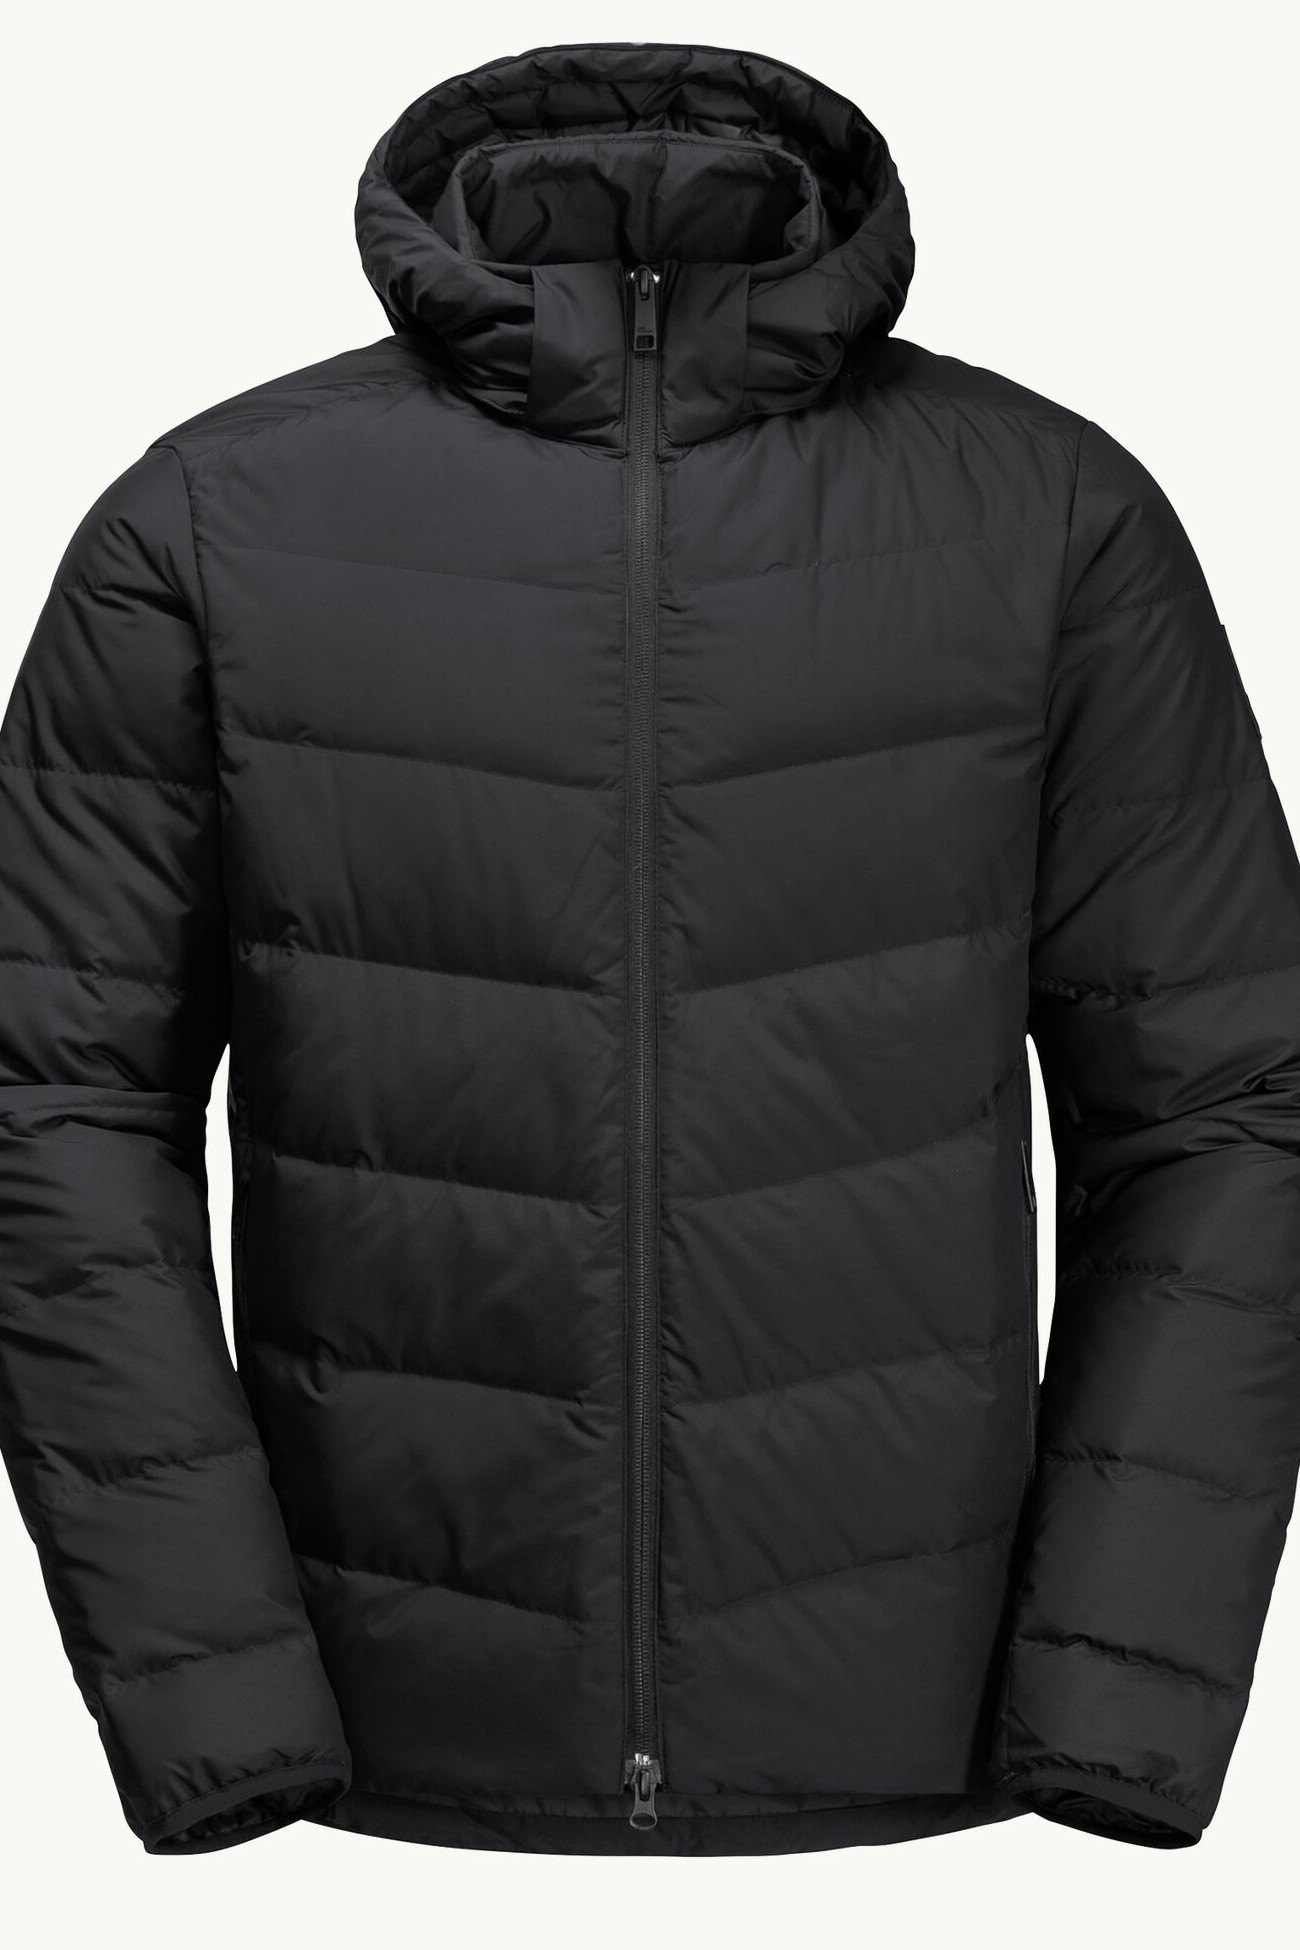 Куртка мужская Jack Wolfskin COLONIUS JKT M черная 1207431-6000 изображение 8